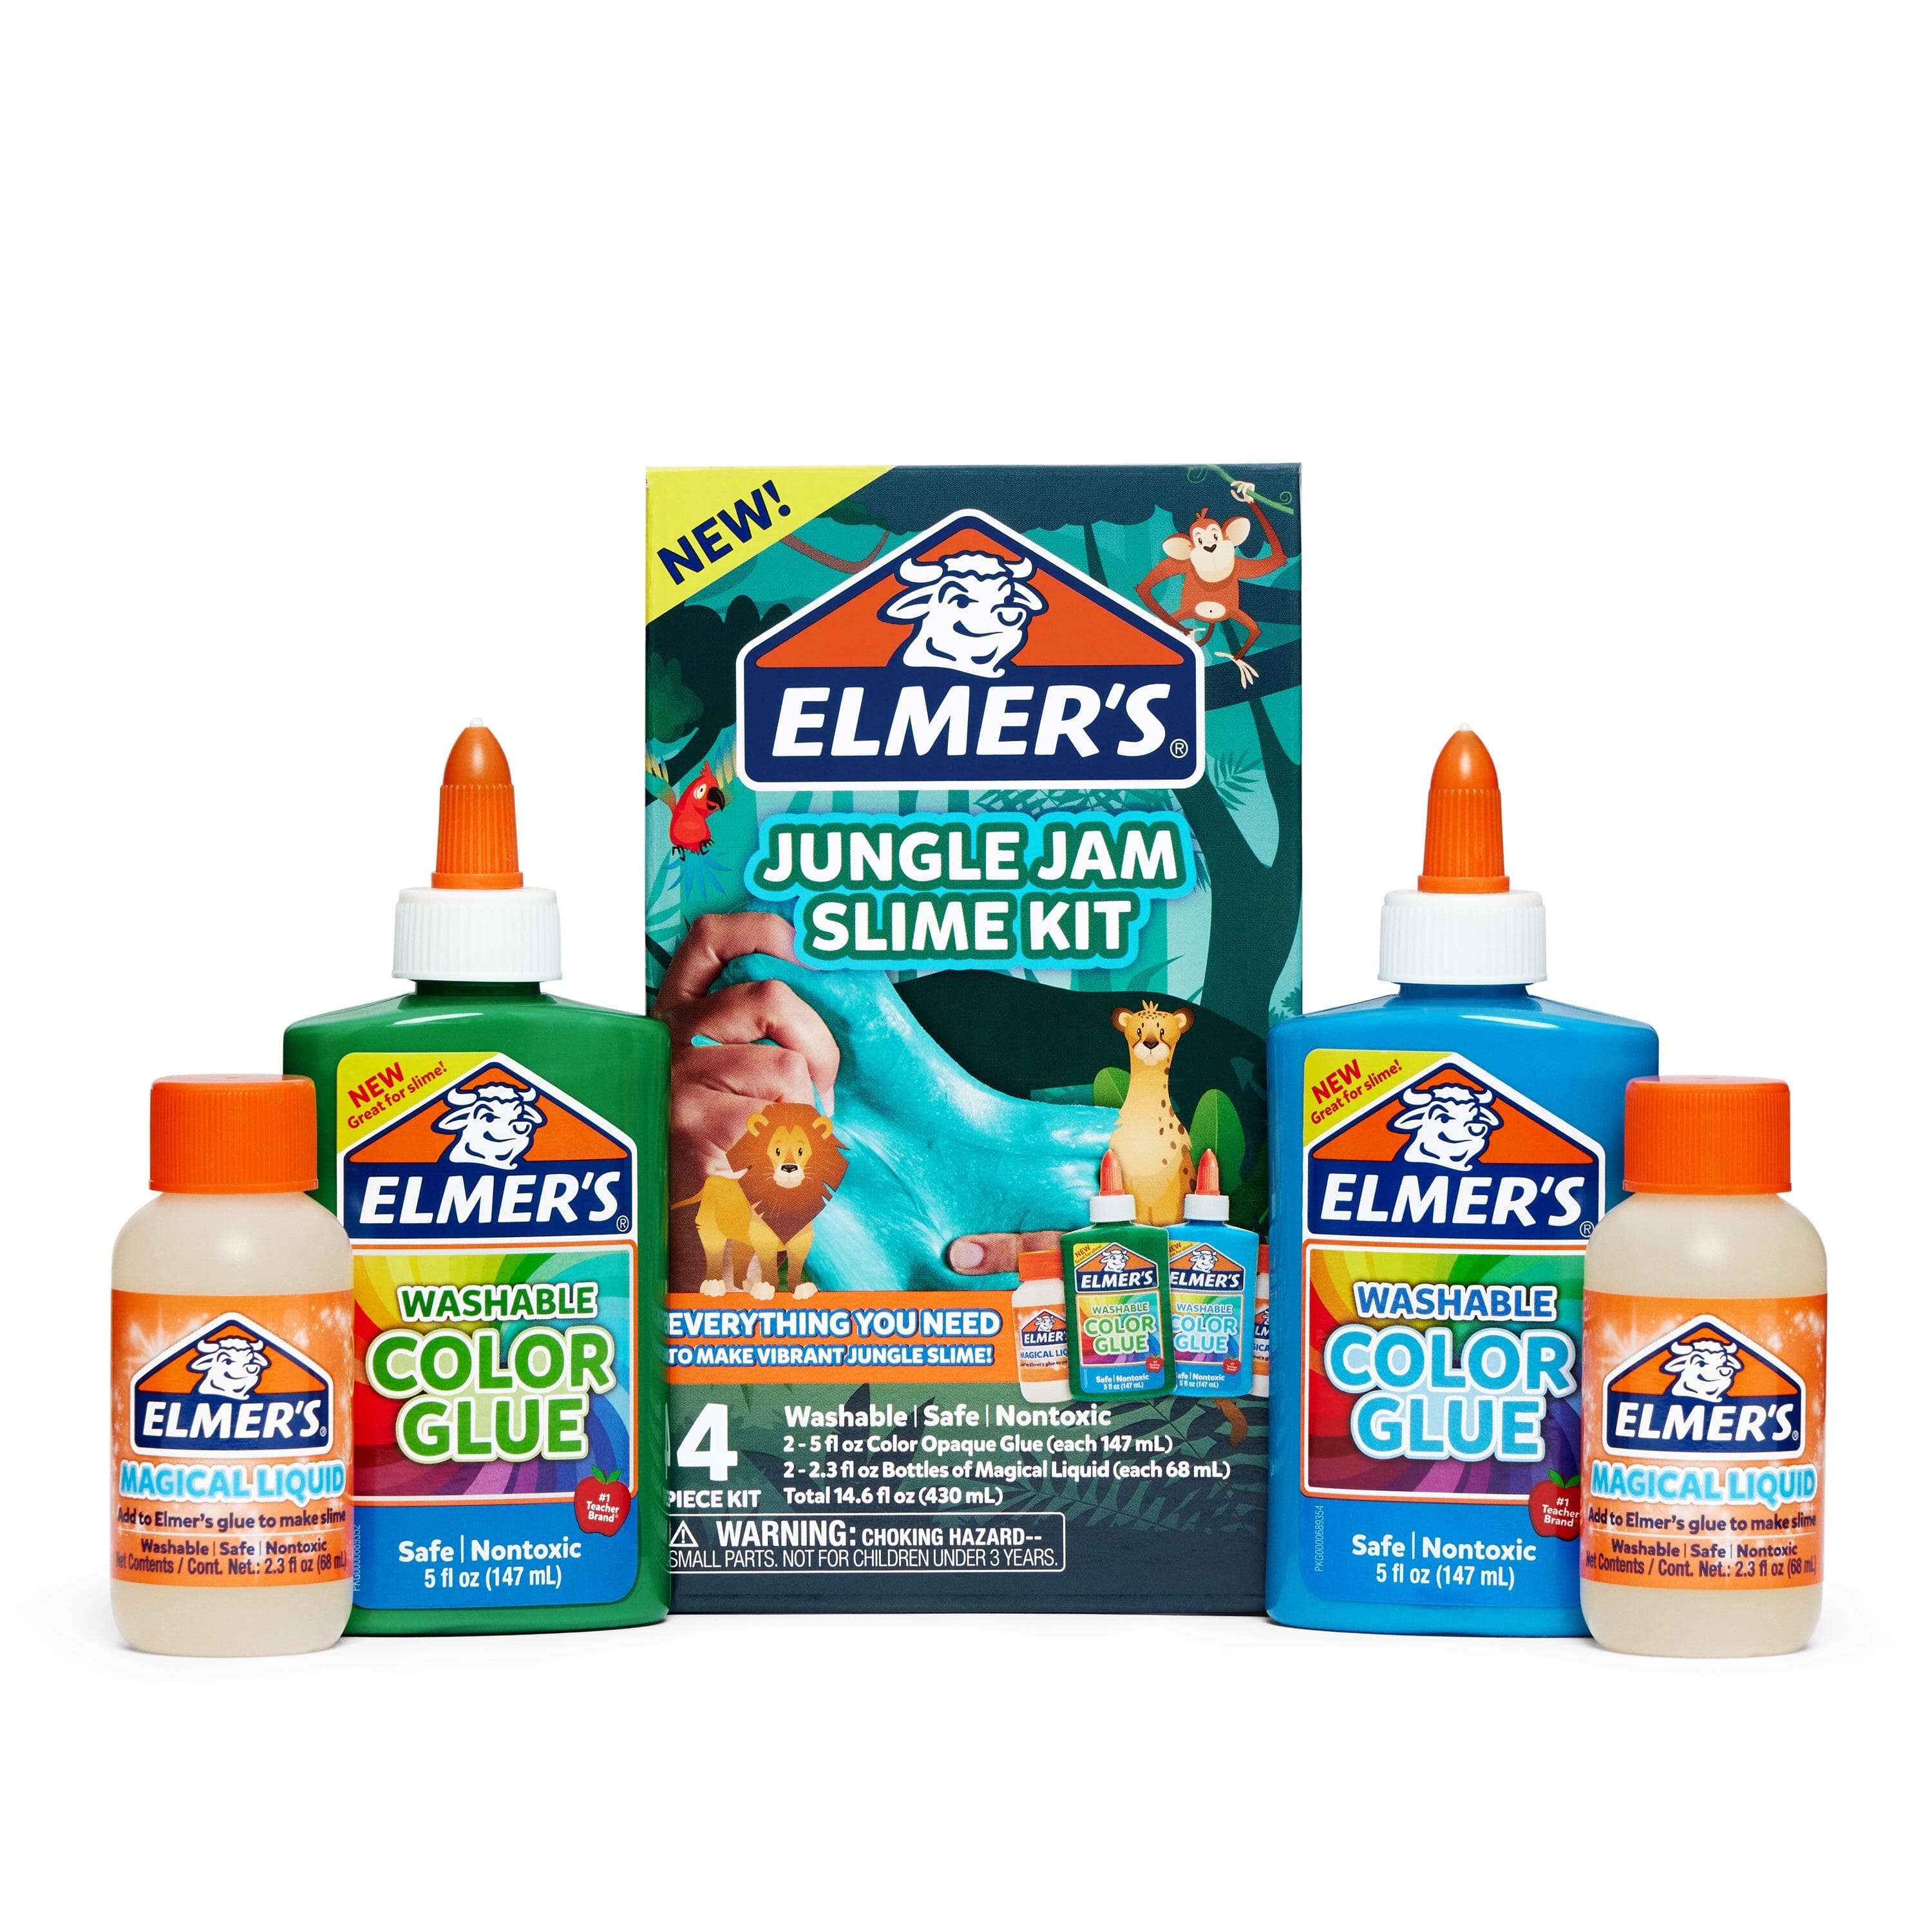 Elmer's Slime Kit, Jungle Jam